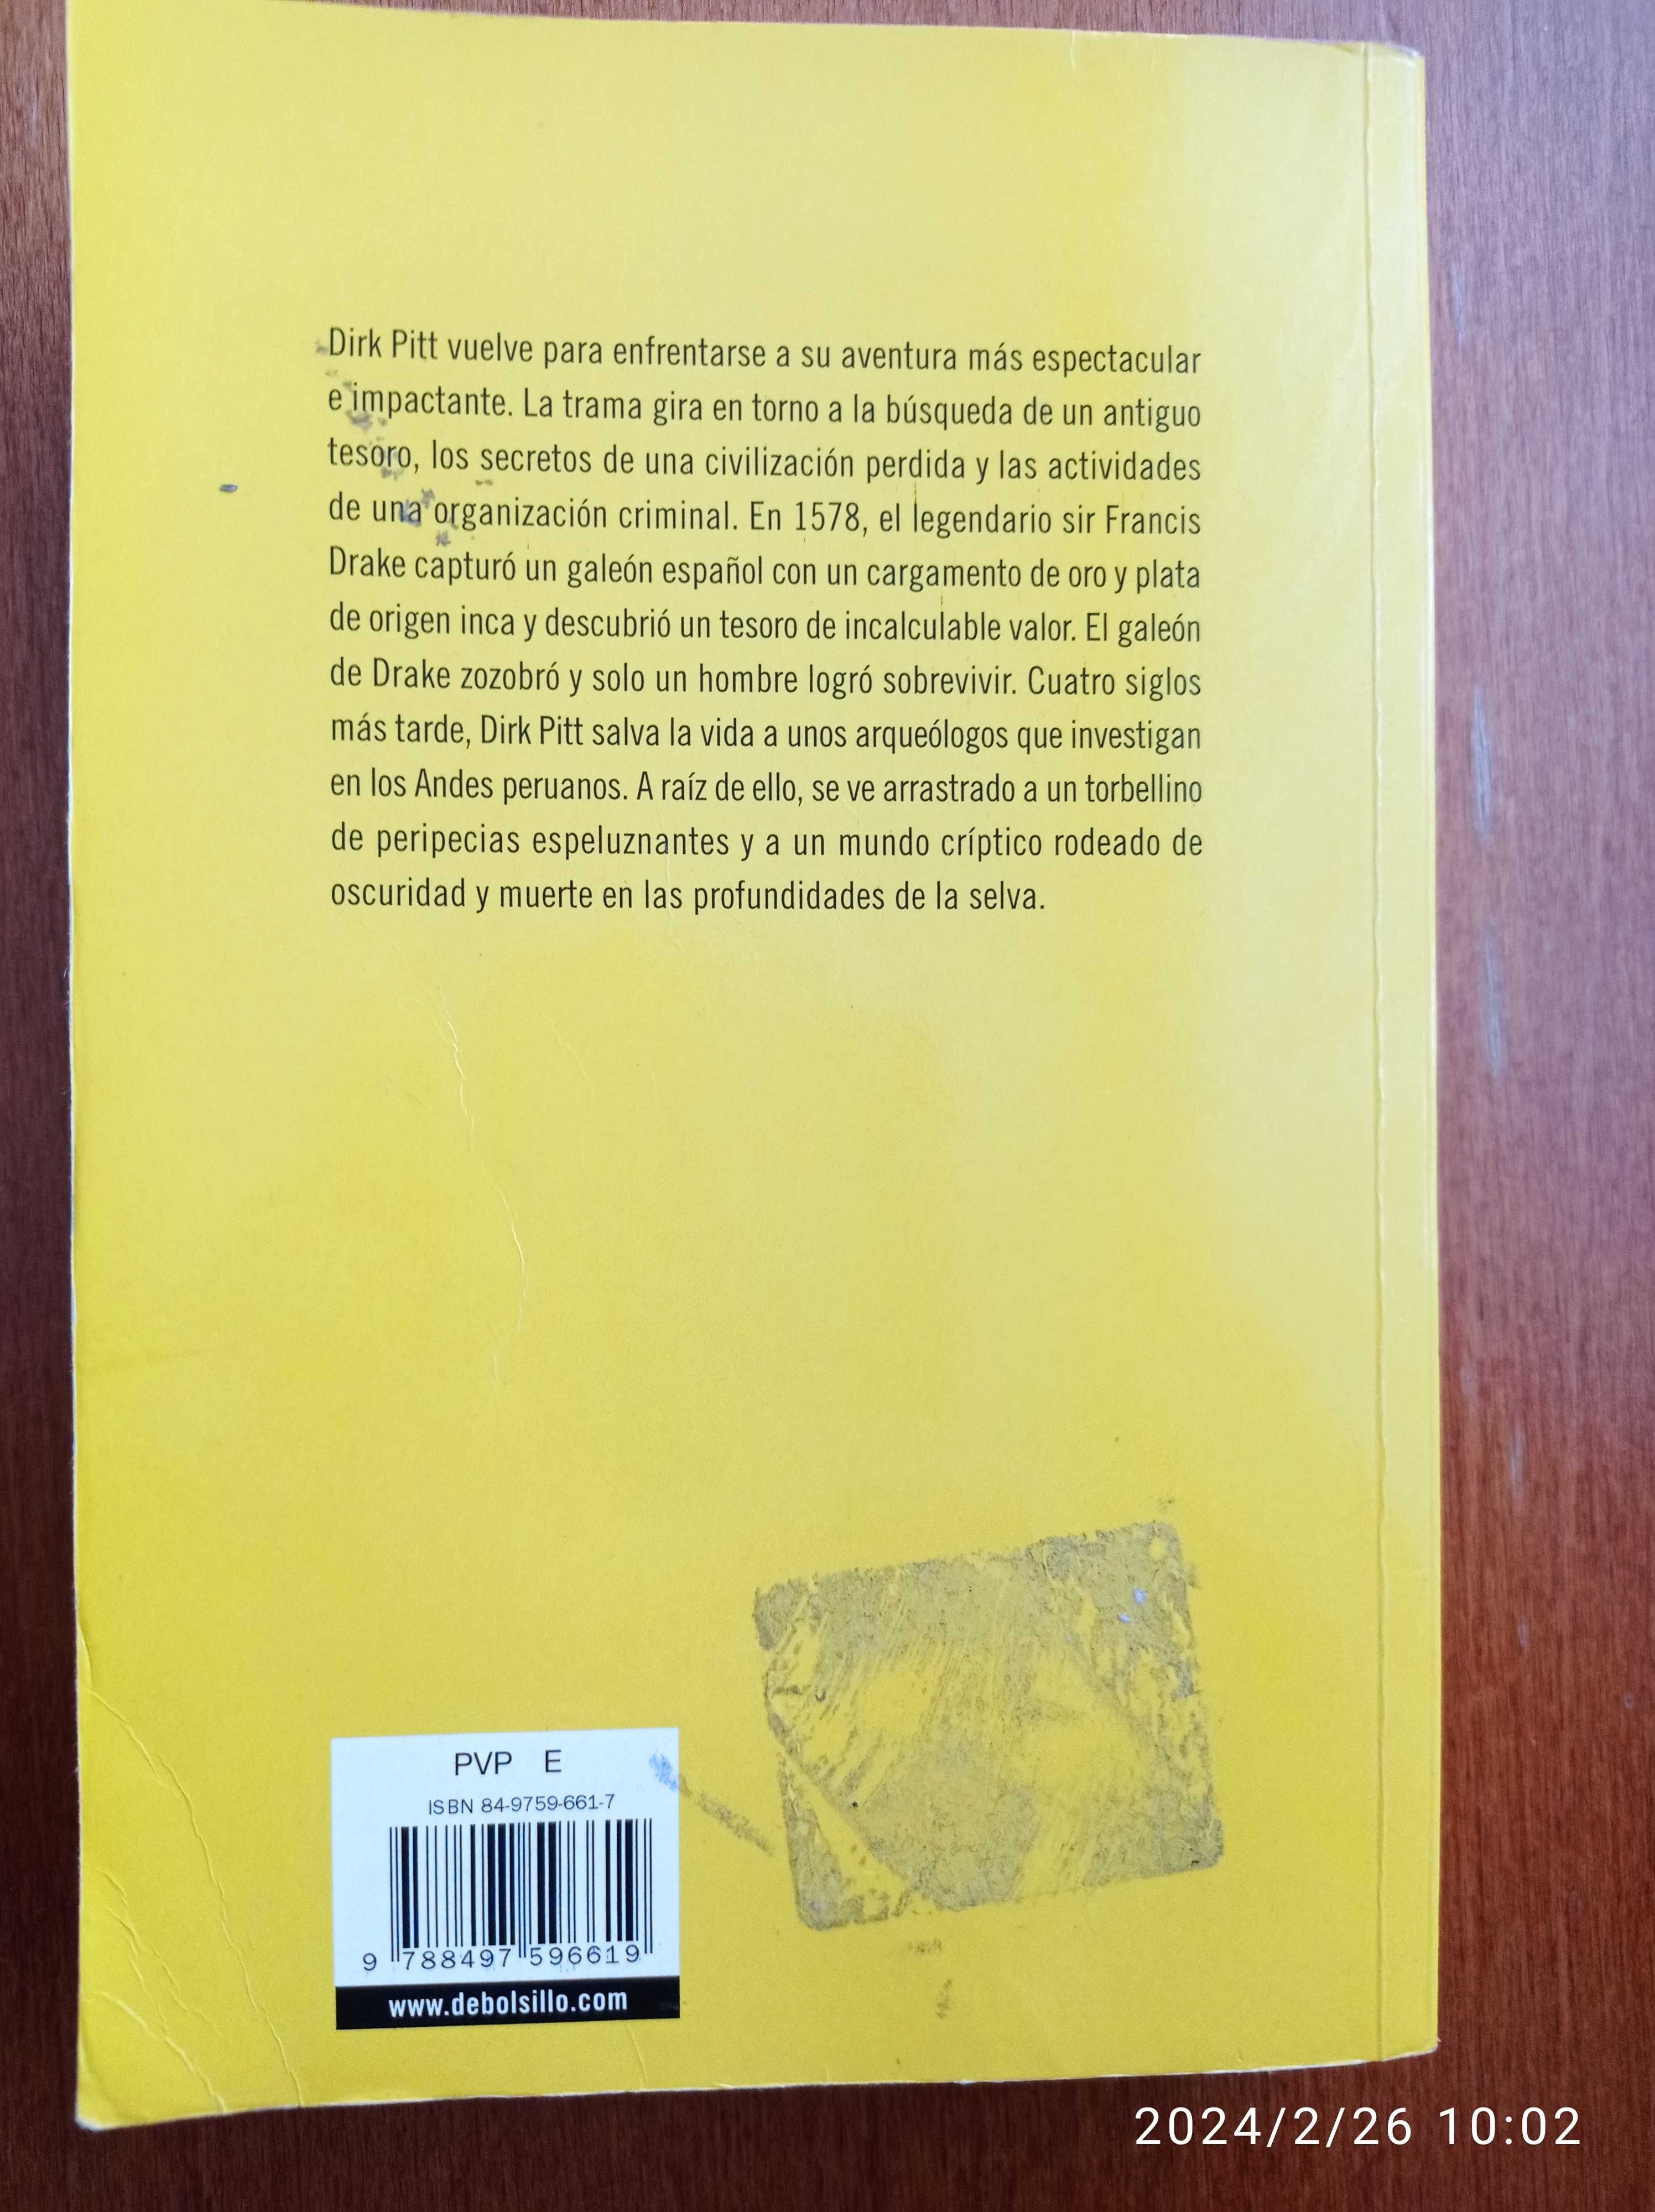 Książki w języku hiszpańskim